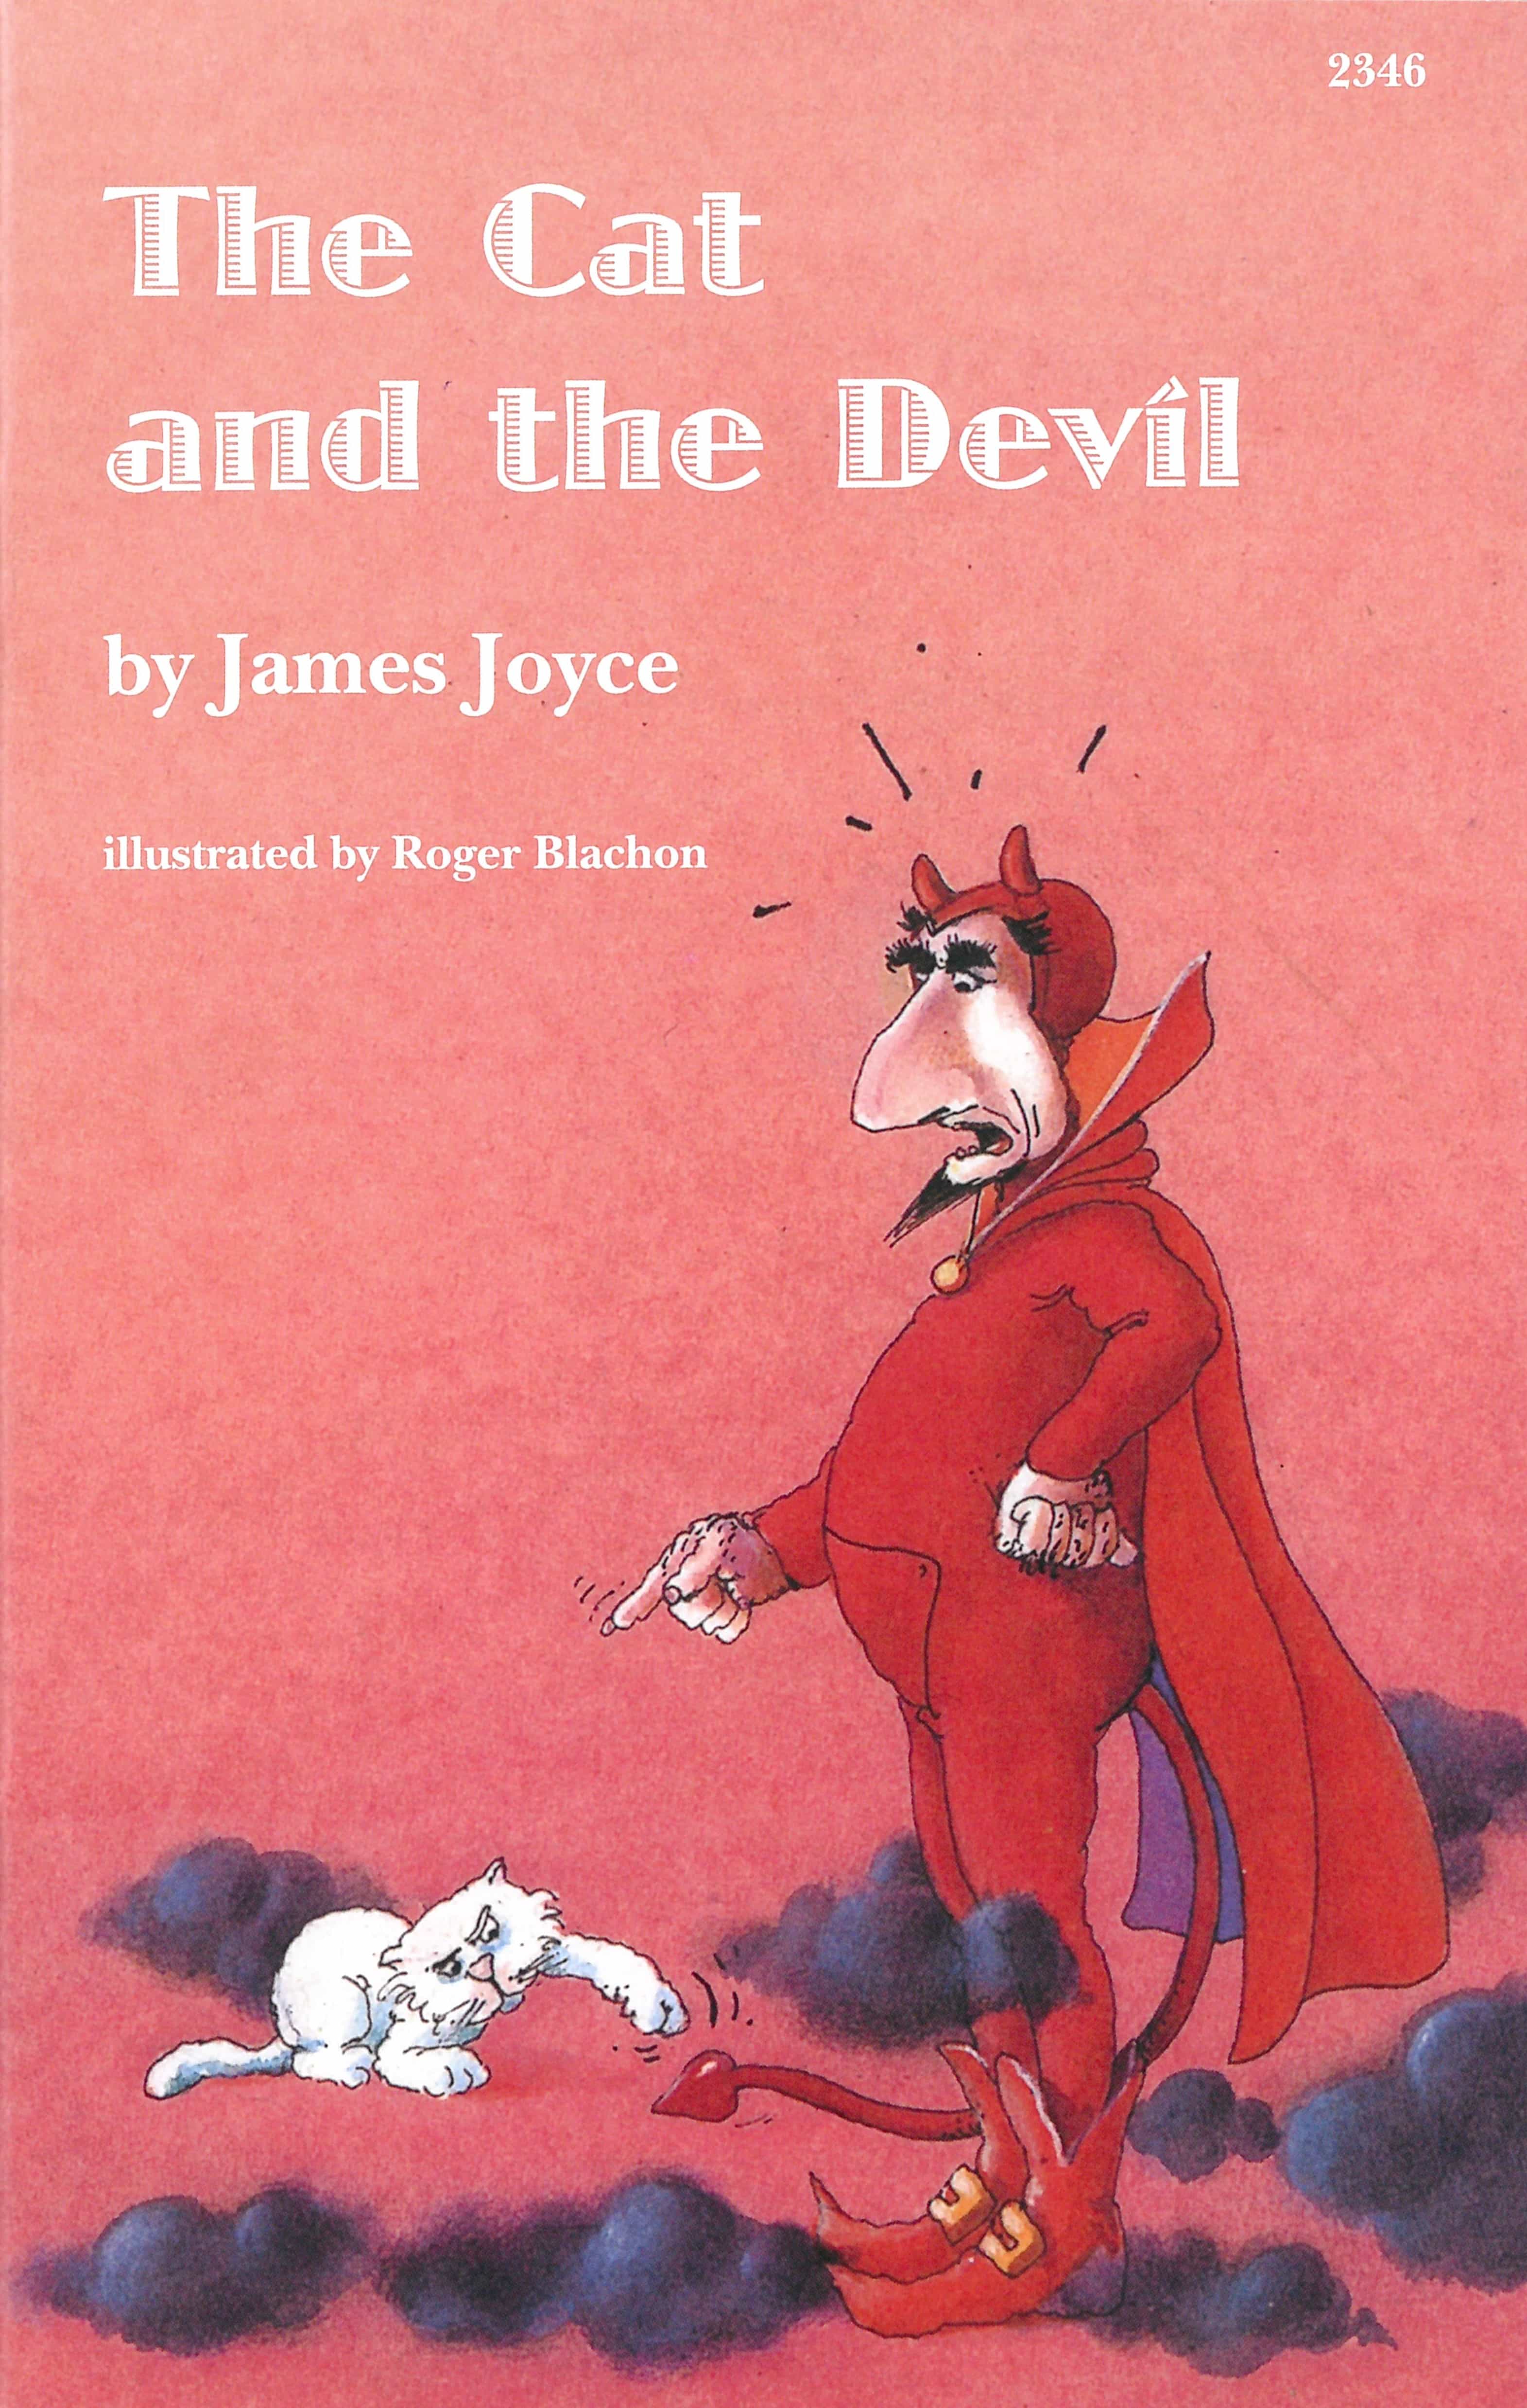 The Cat and the Devil, ein Kinderbuch von James Joyce, Illustration von Roger Blachon, SJW Verlag, Sagen & Fabeln